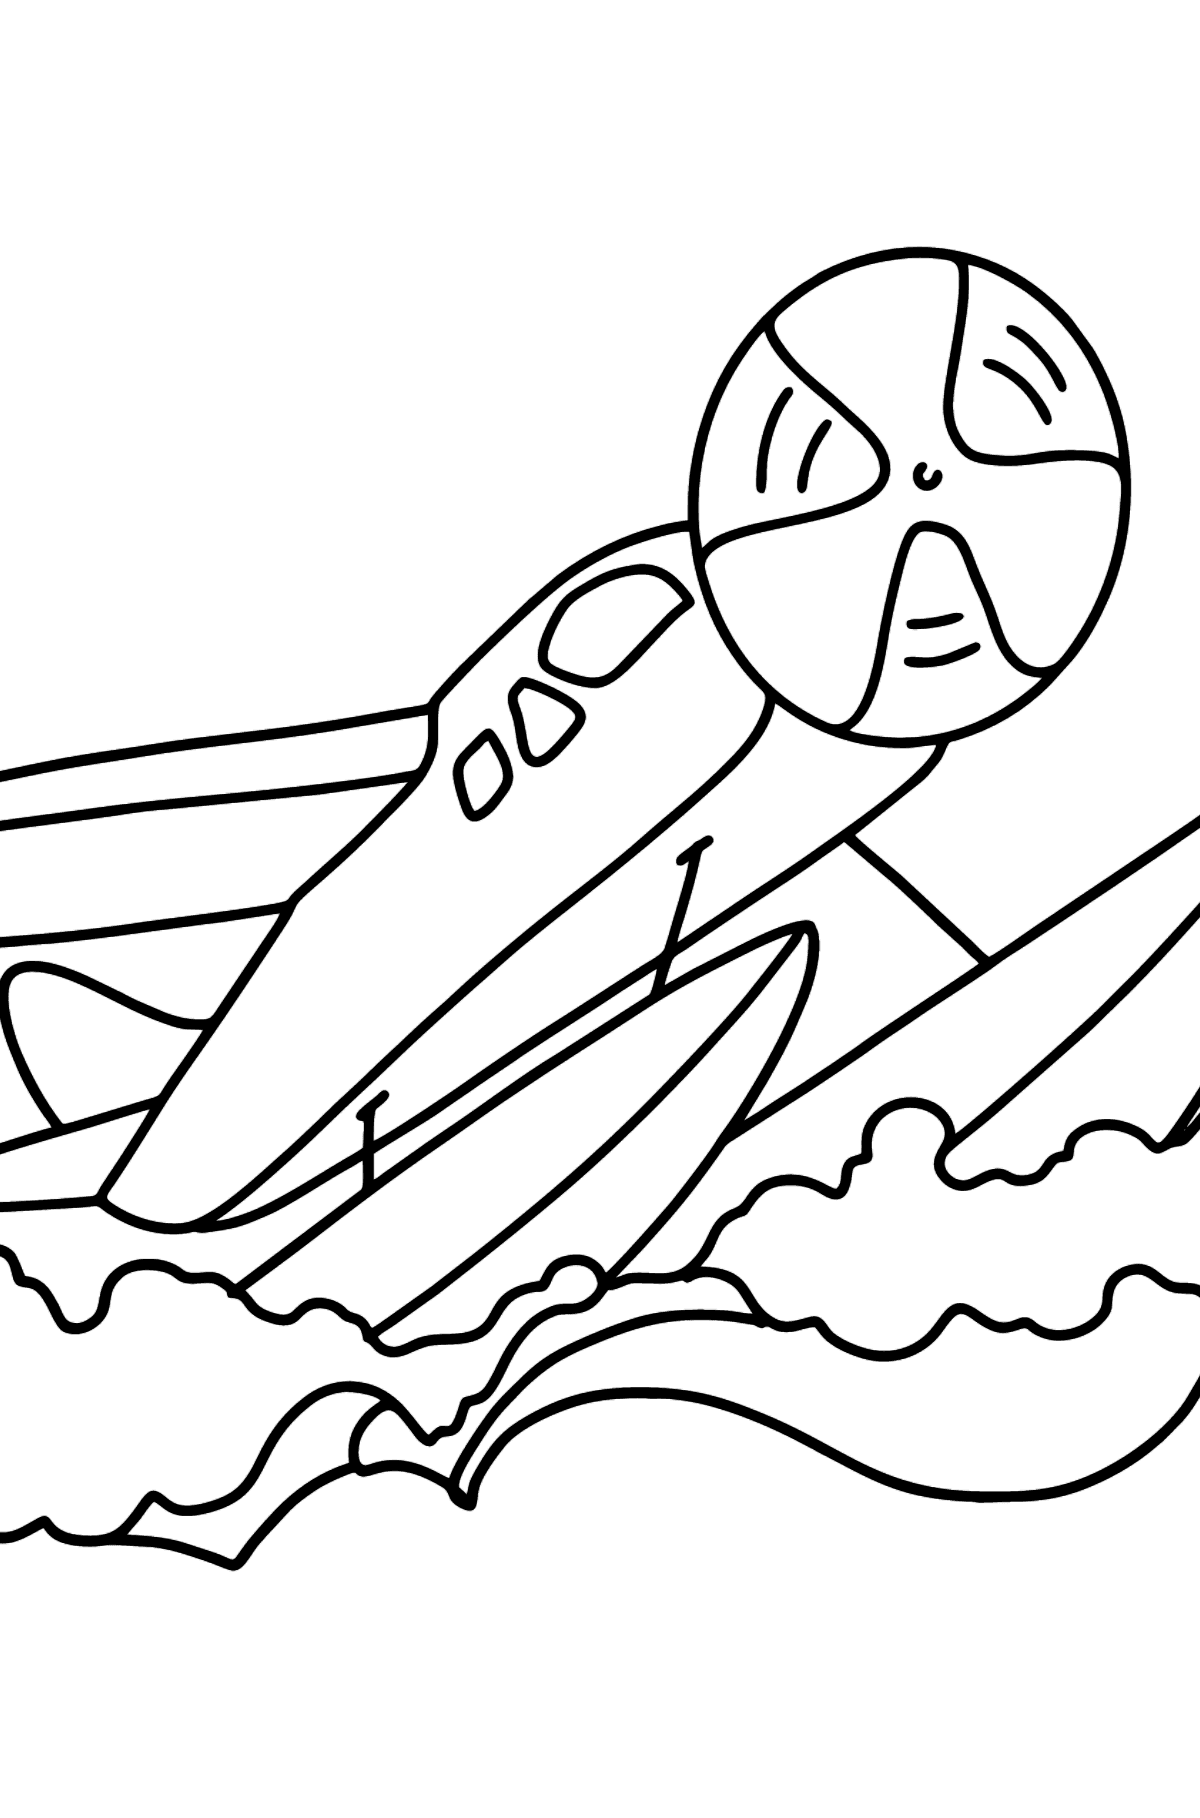 Desen de colorat avion amfibie - Desene de colorat pentru copii